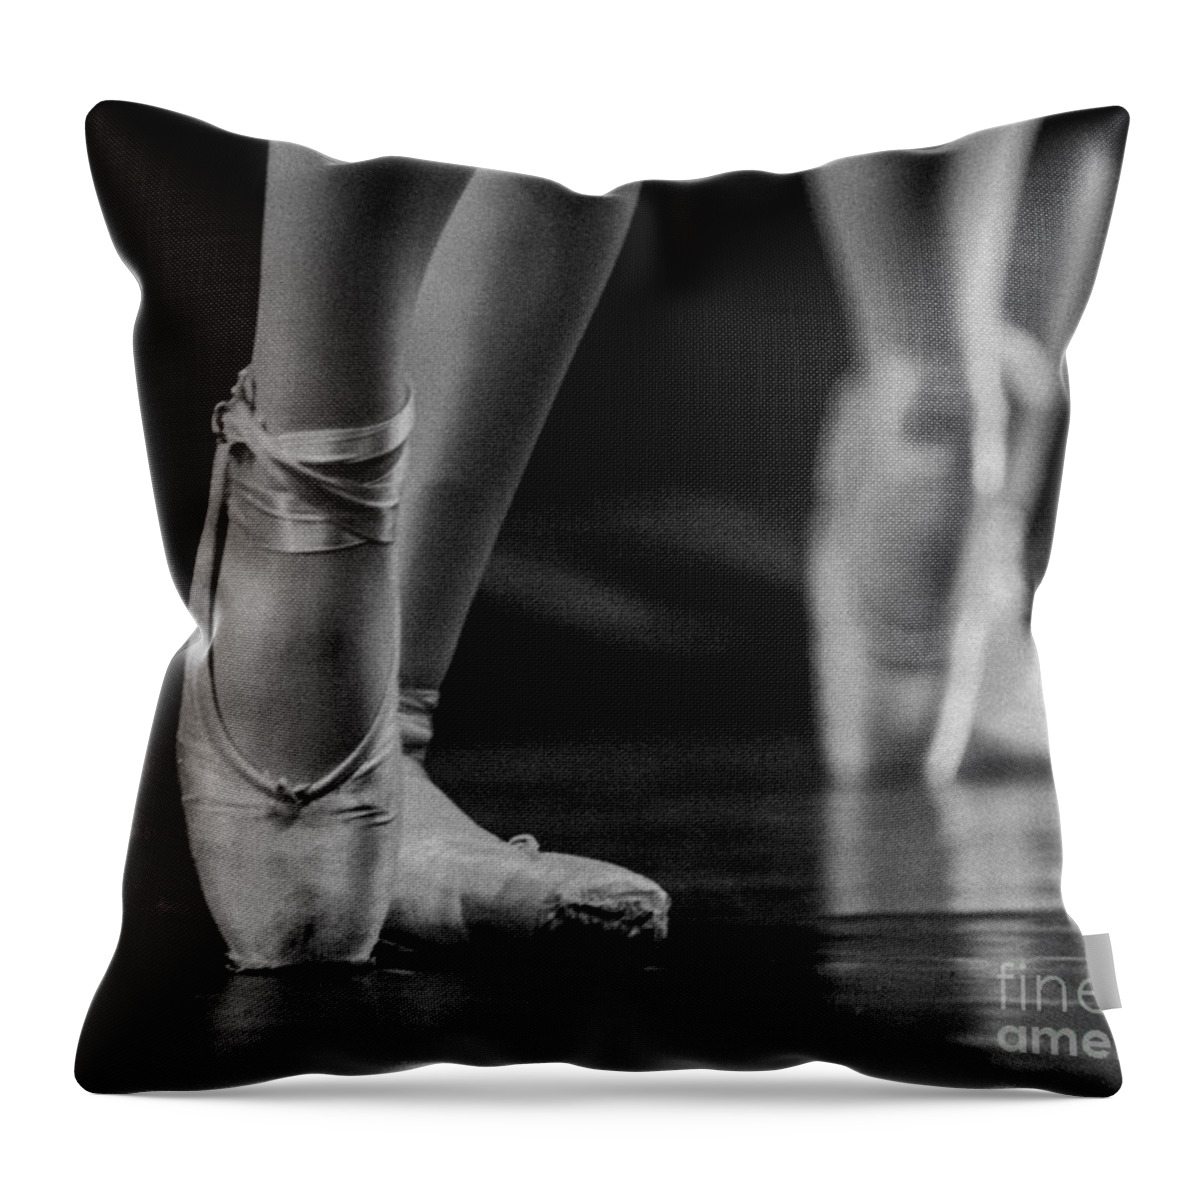 Ballet Throw Pillow featuring the photograph Ballet by Ken Marsh